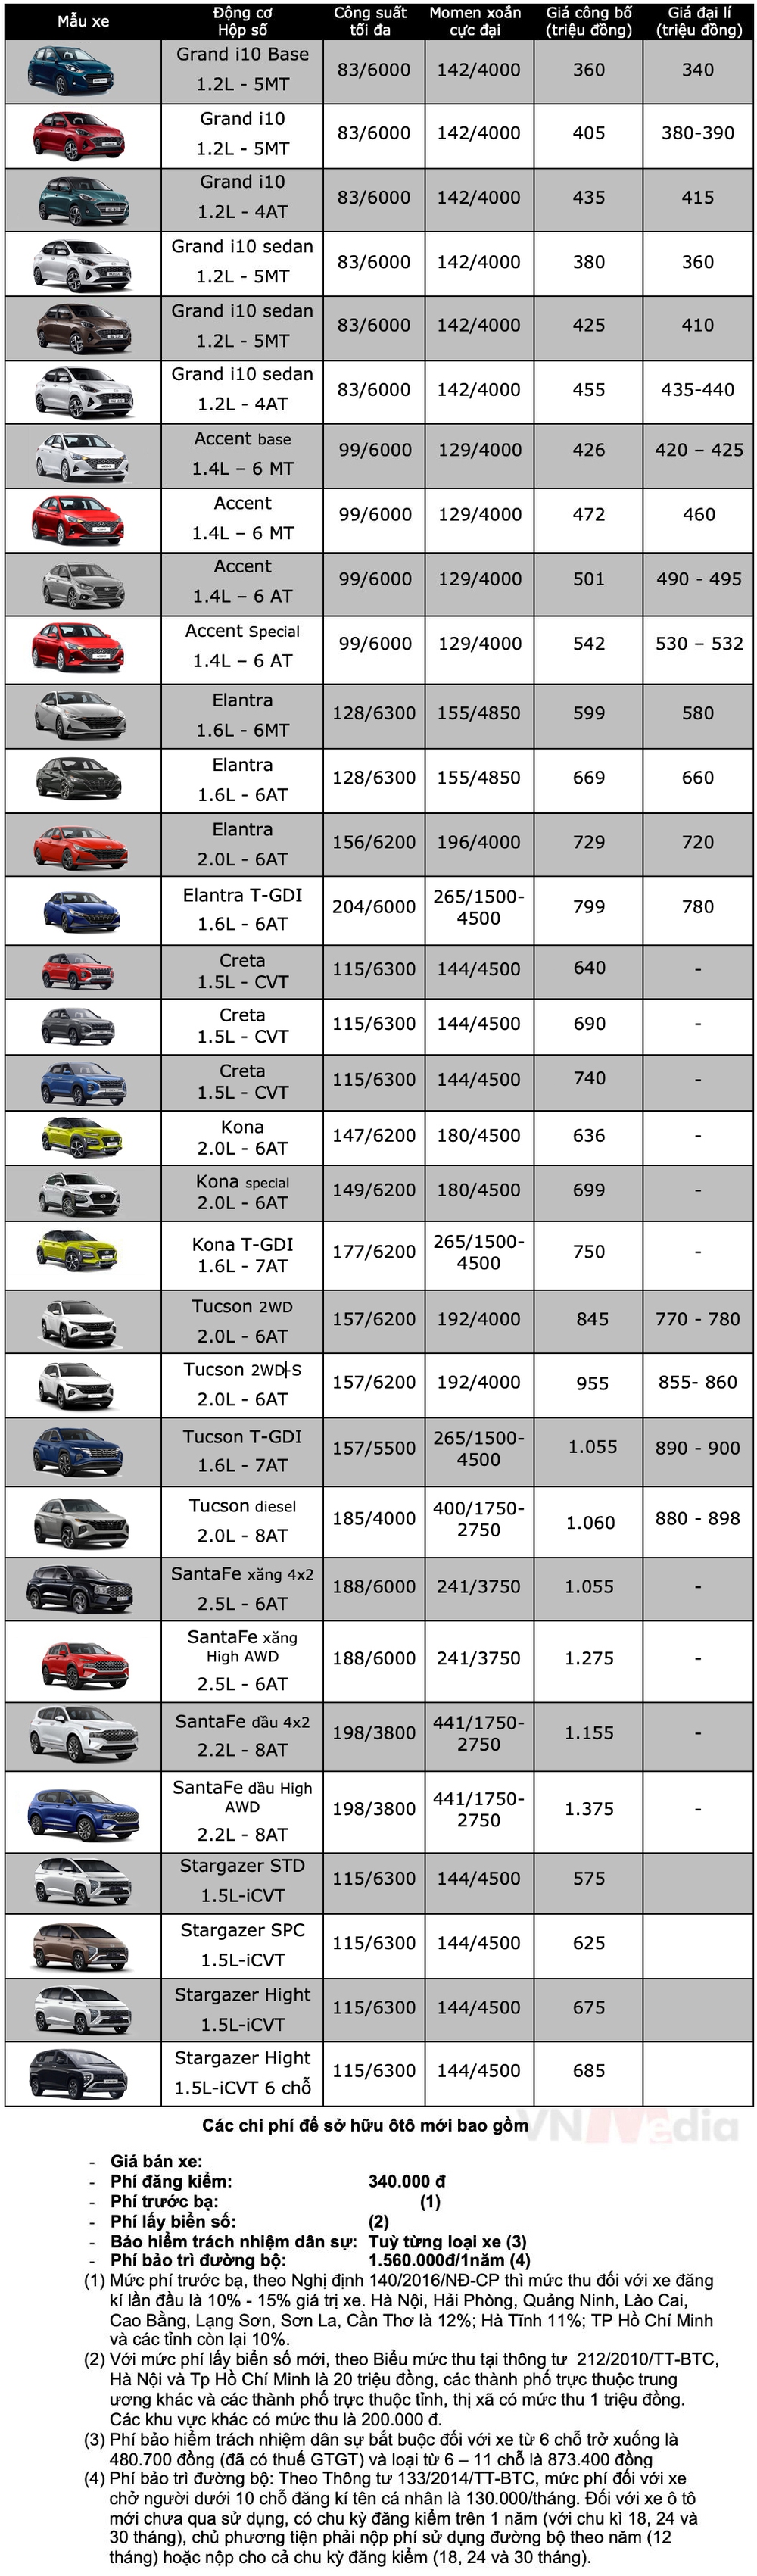 Bảng giá xe Hyundai tháng 6: Hyundai Stargazer được ưu đãi 80 triệu đồng - Ảnh 2.